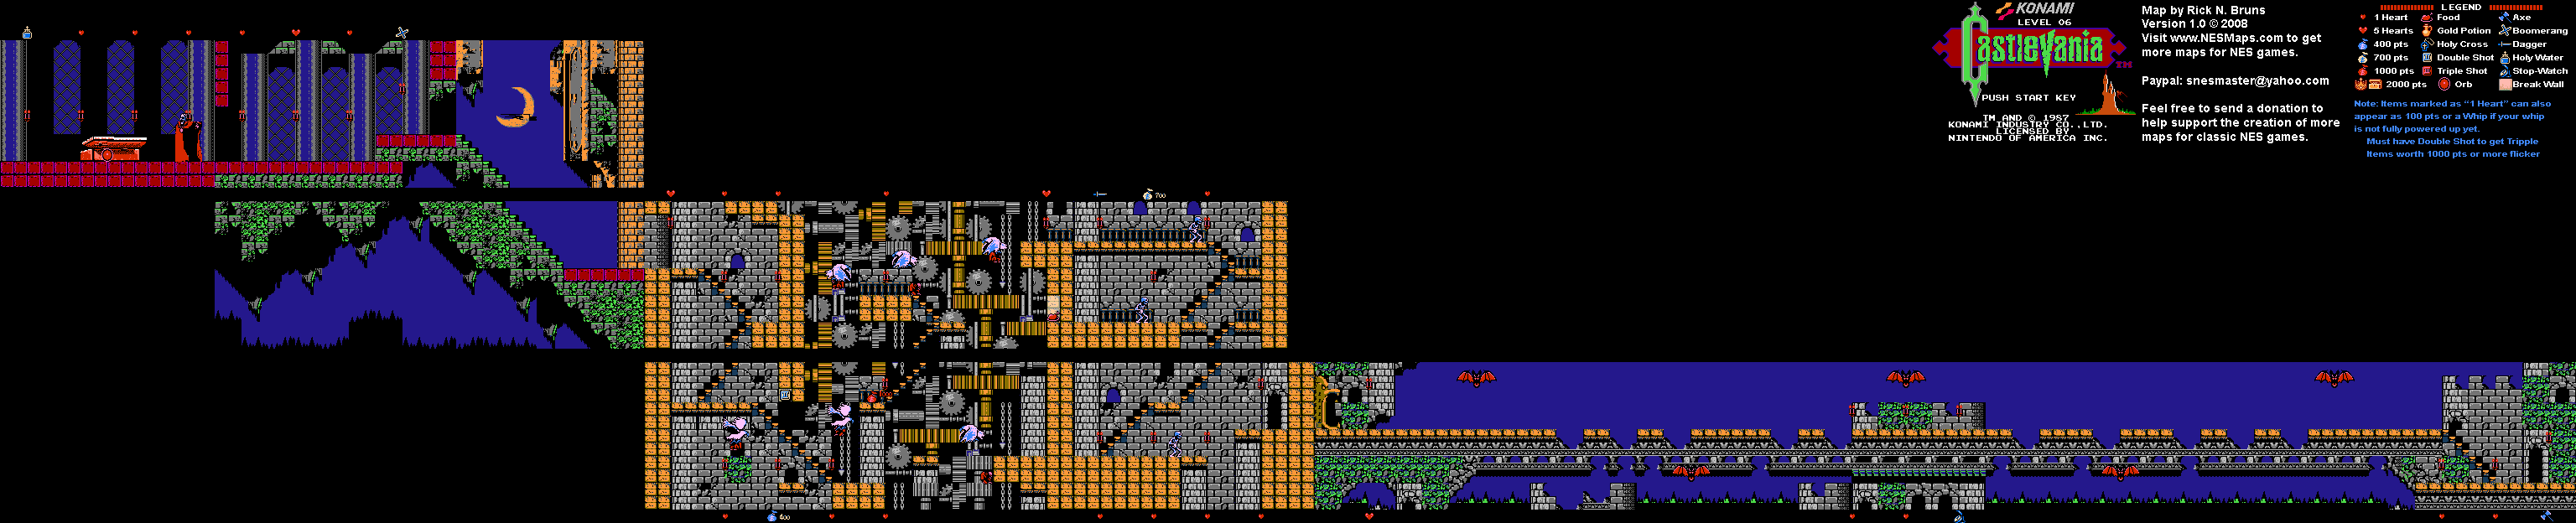 Castlevania - Level 6 Nintendo NES Map